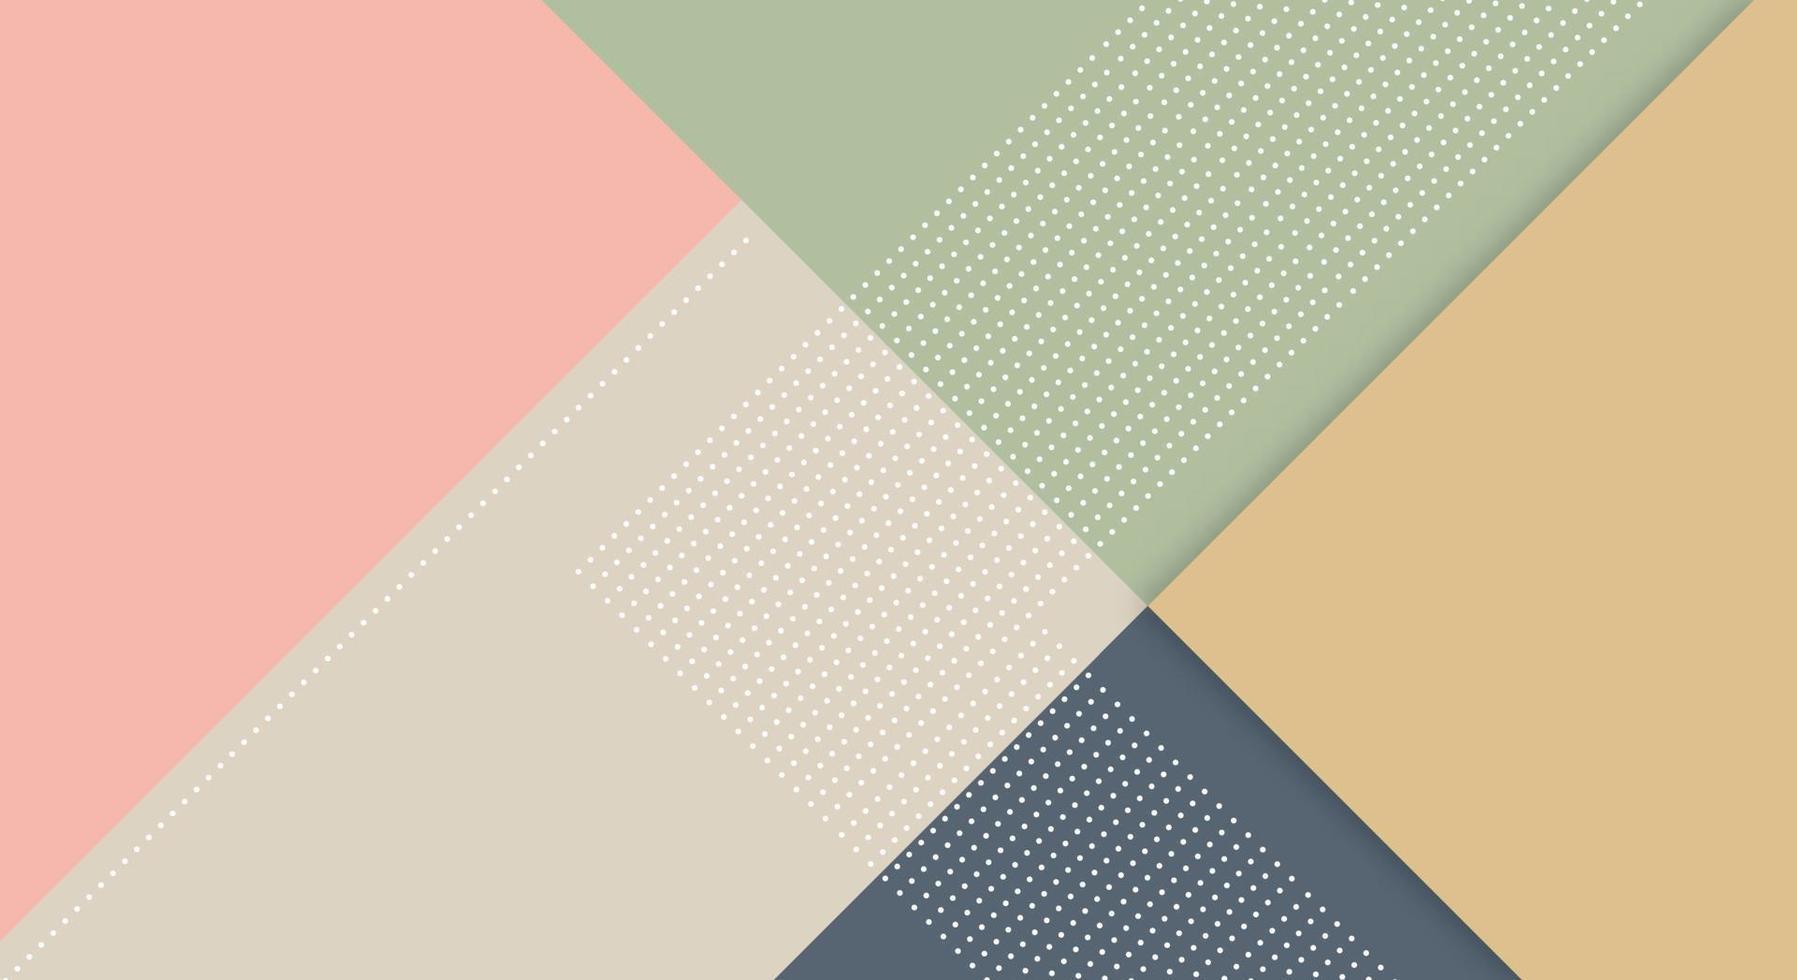 abstract papier kleurrijk achtergrond met Memphis papercut stijl en pastel kleur voor behang vector